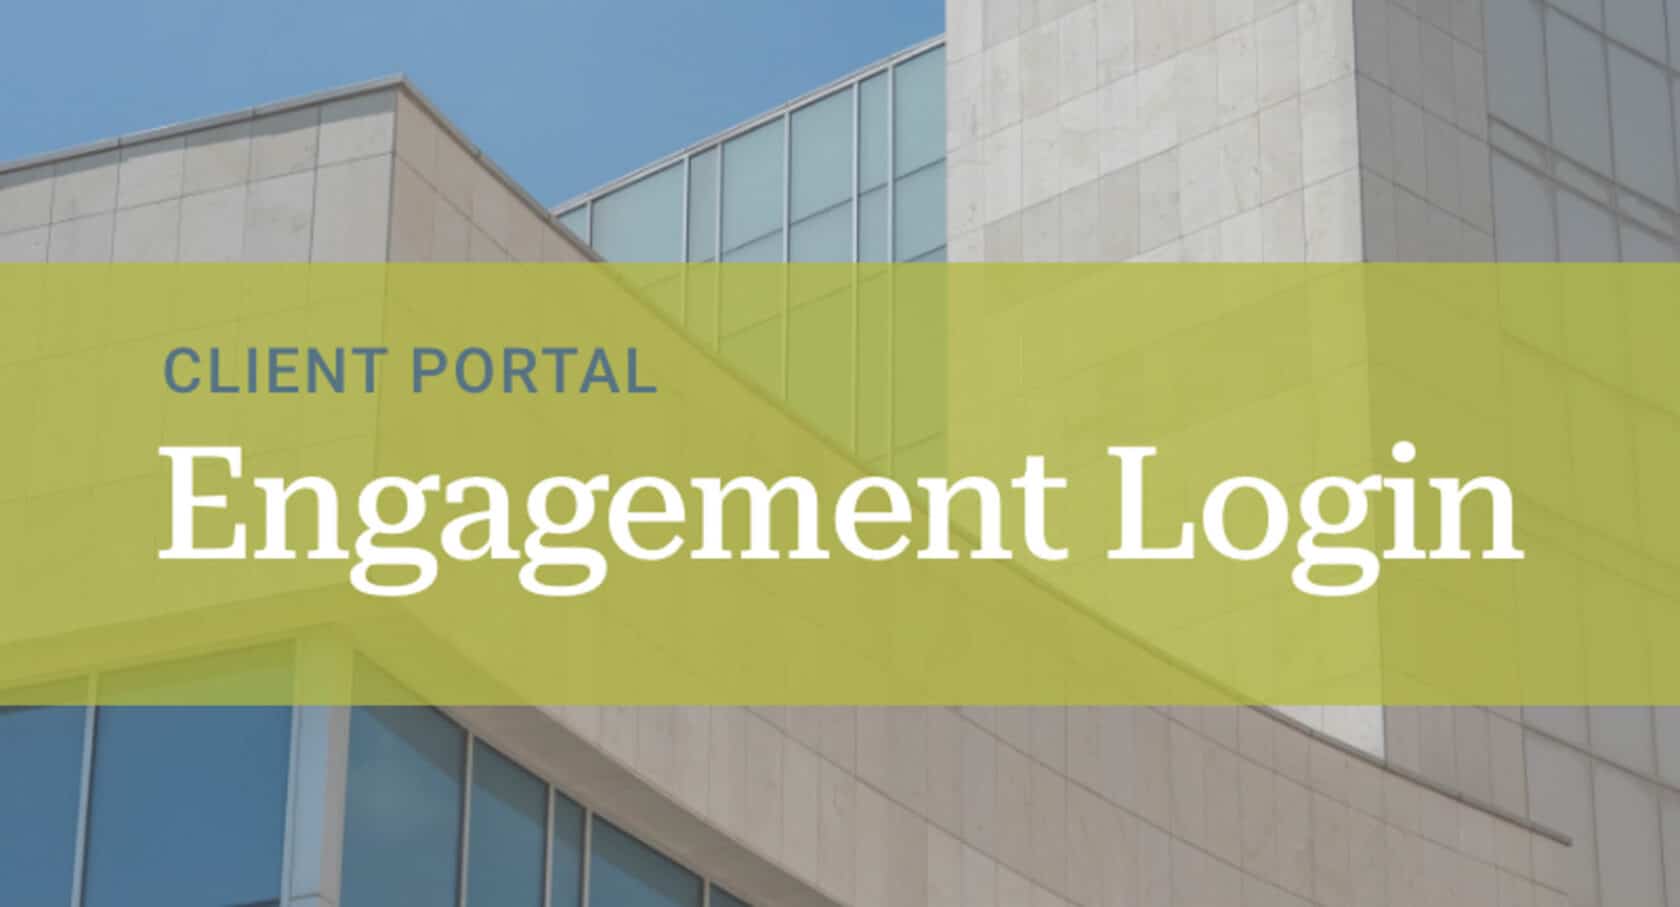 client-portal-engagement-login-1680x907